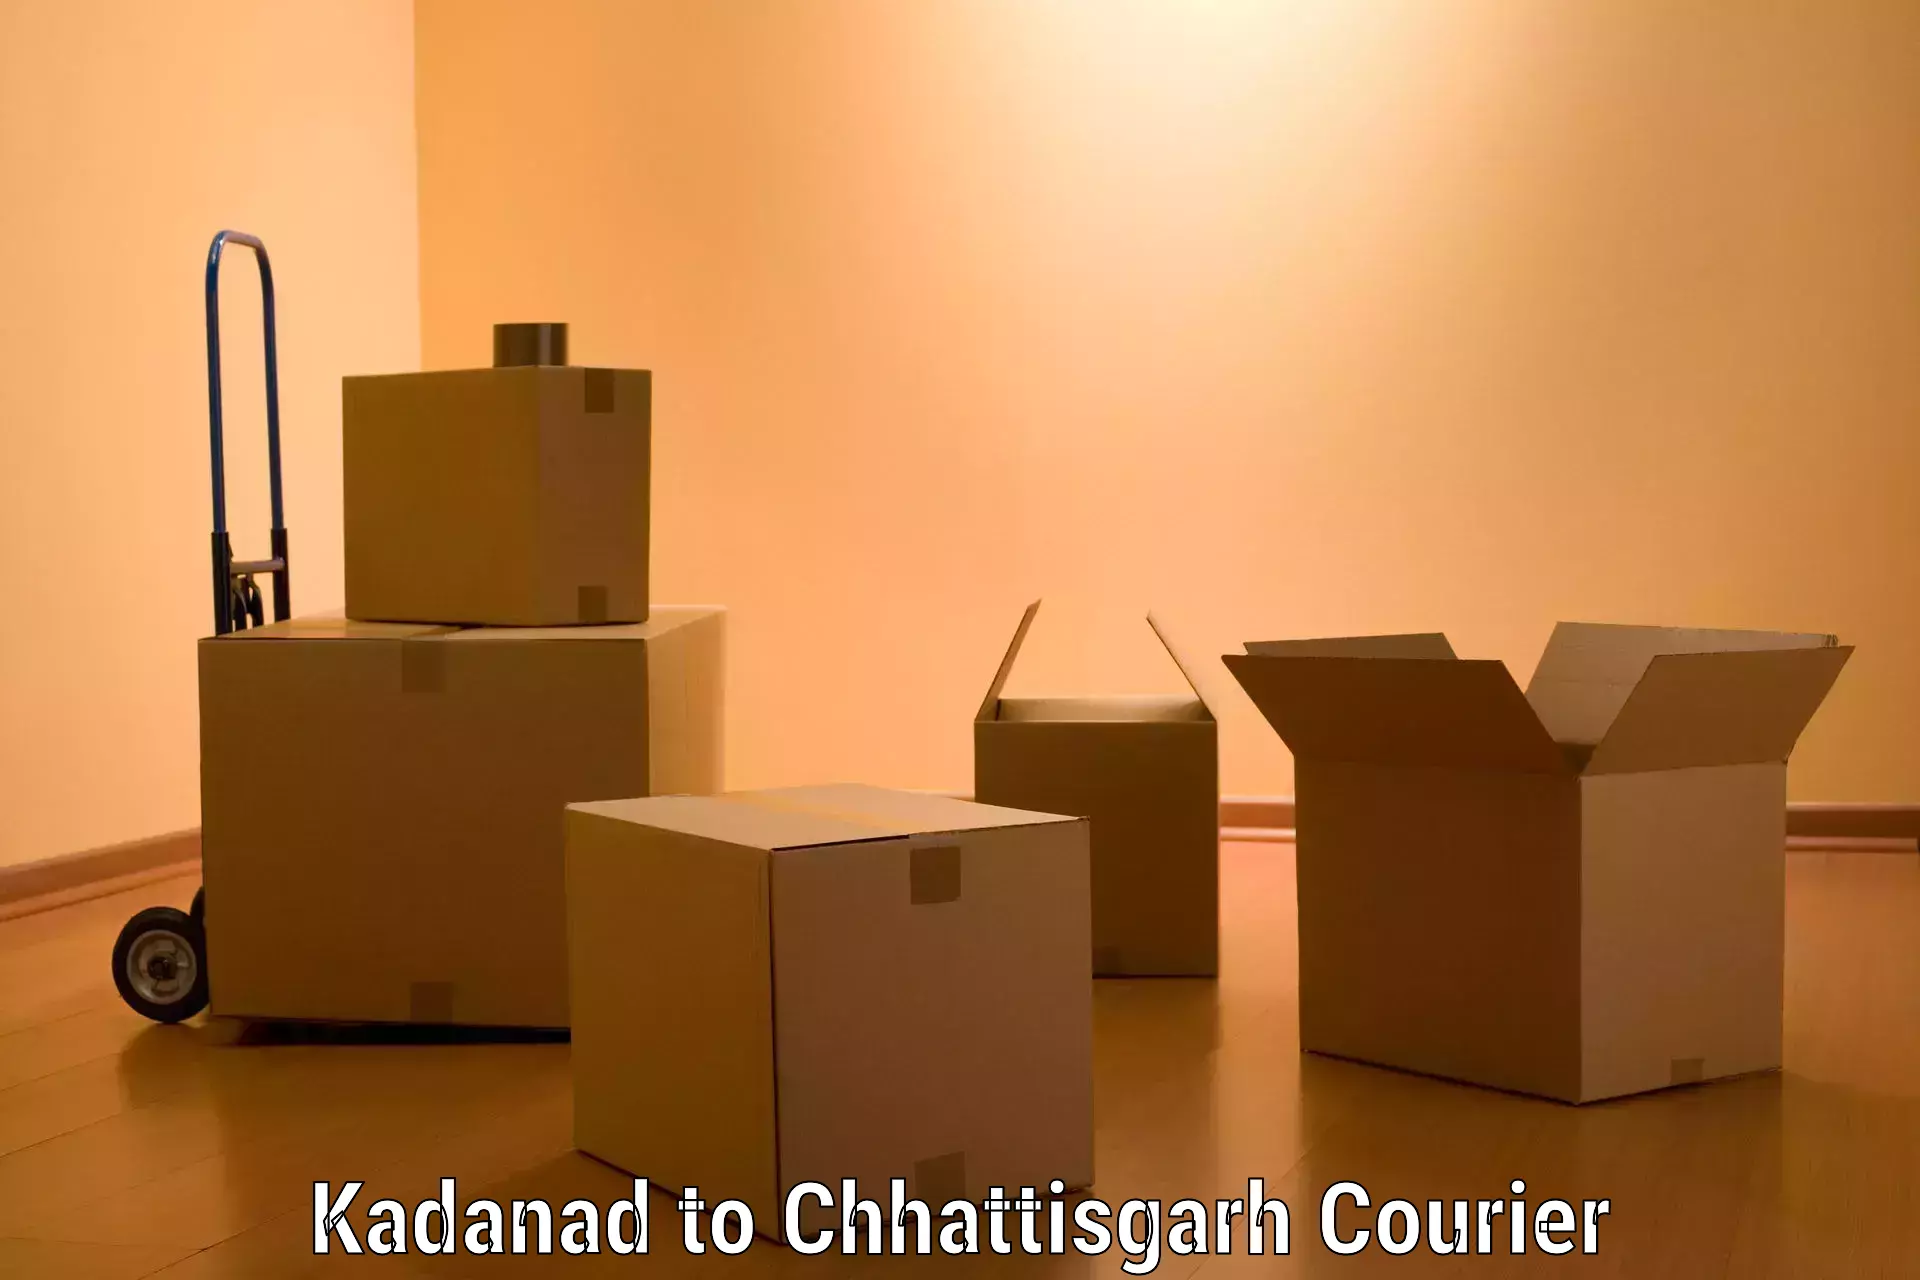 Seamless moving process Kadanad to Bastar